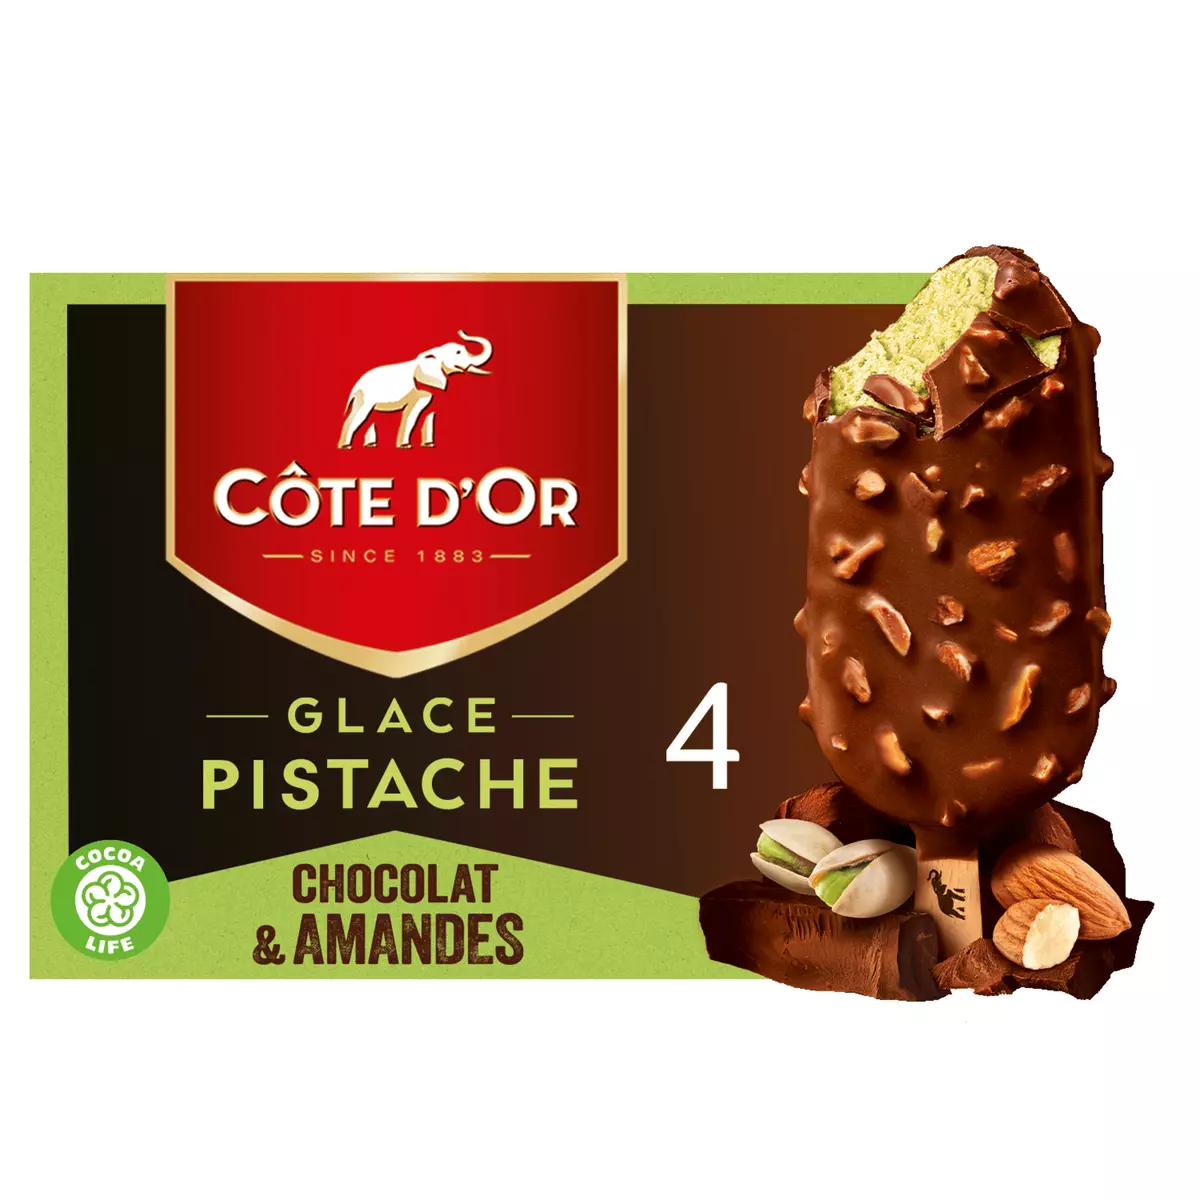 COTE D'OR Bâtonnet glacé pistache chocolat et amandes 4 pièces 260g